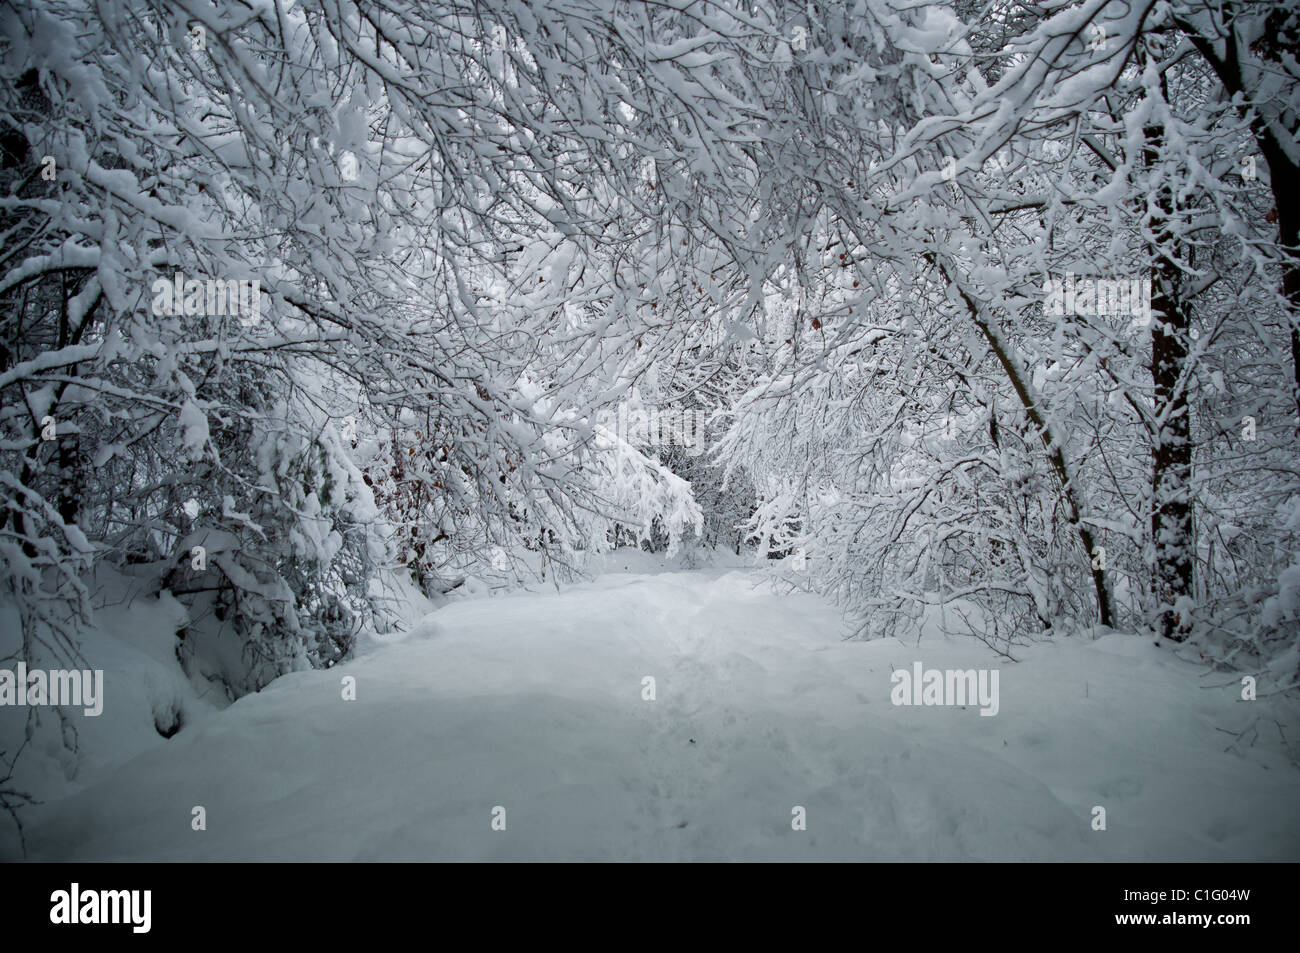 Chemin enneigé dans la forêt avec de la neige blanche épaisse, Ecosse Banque D'Images